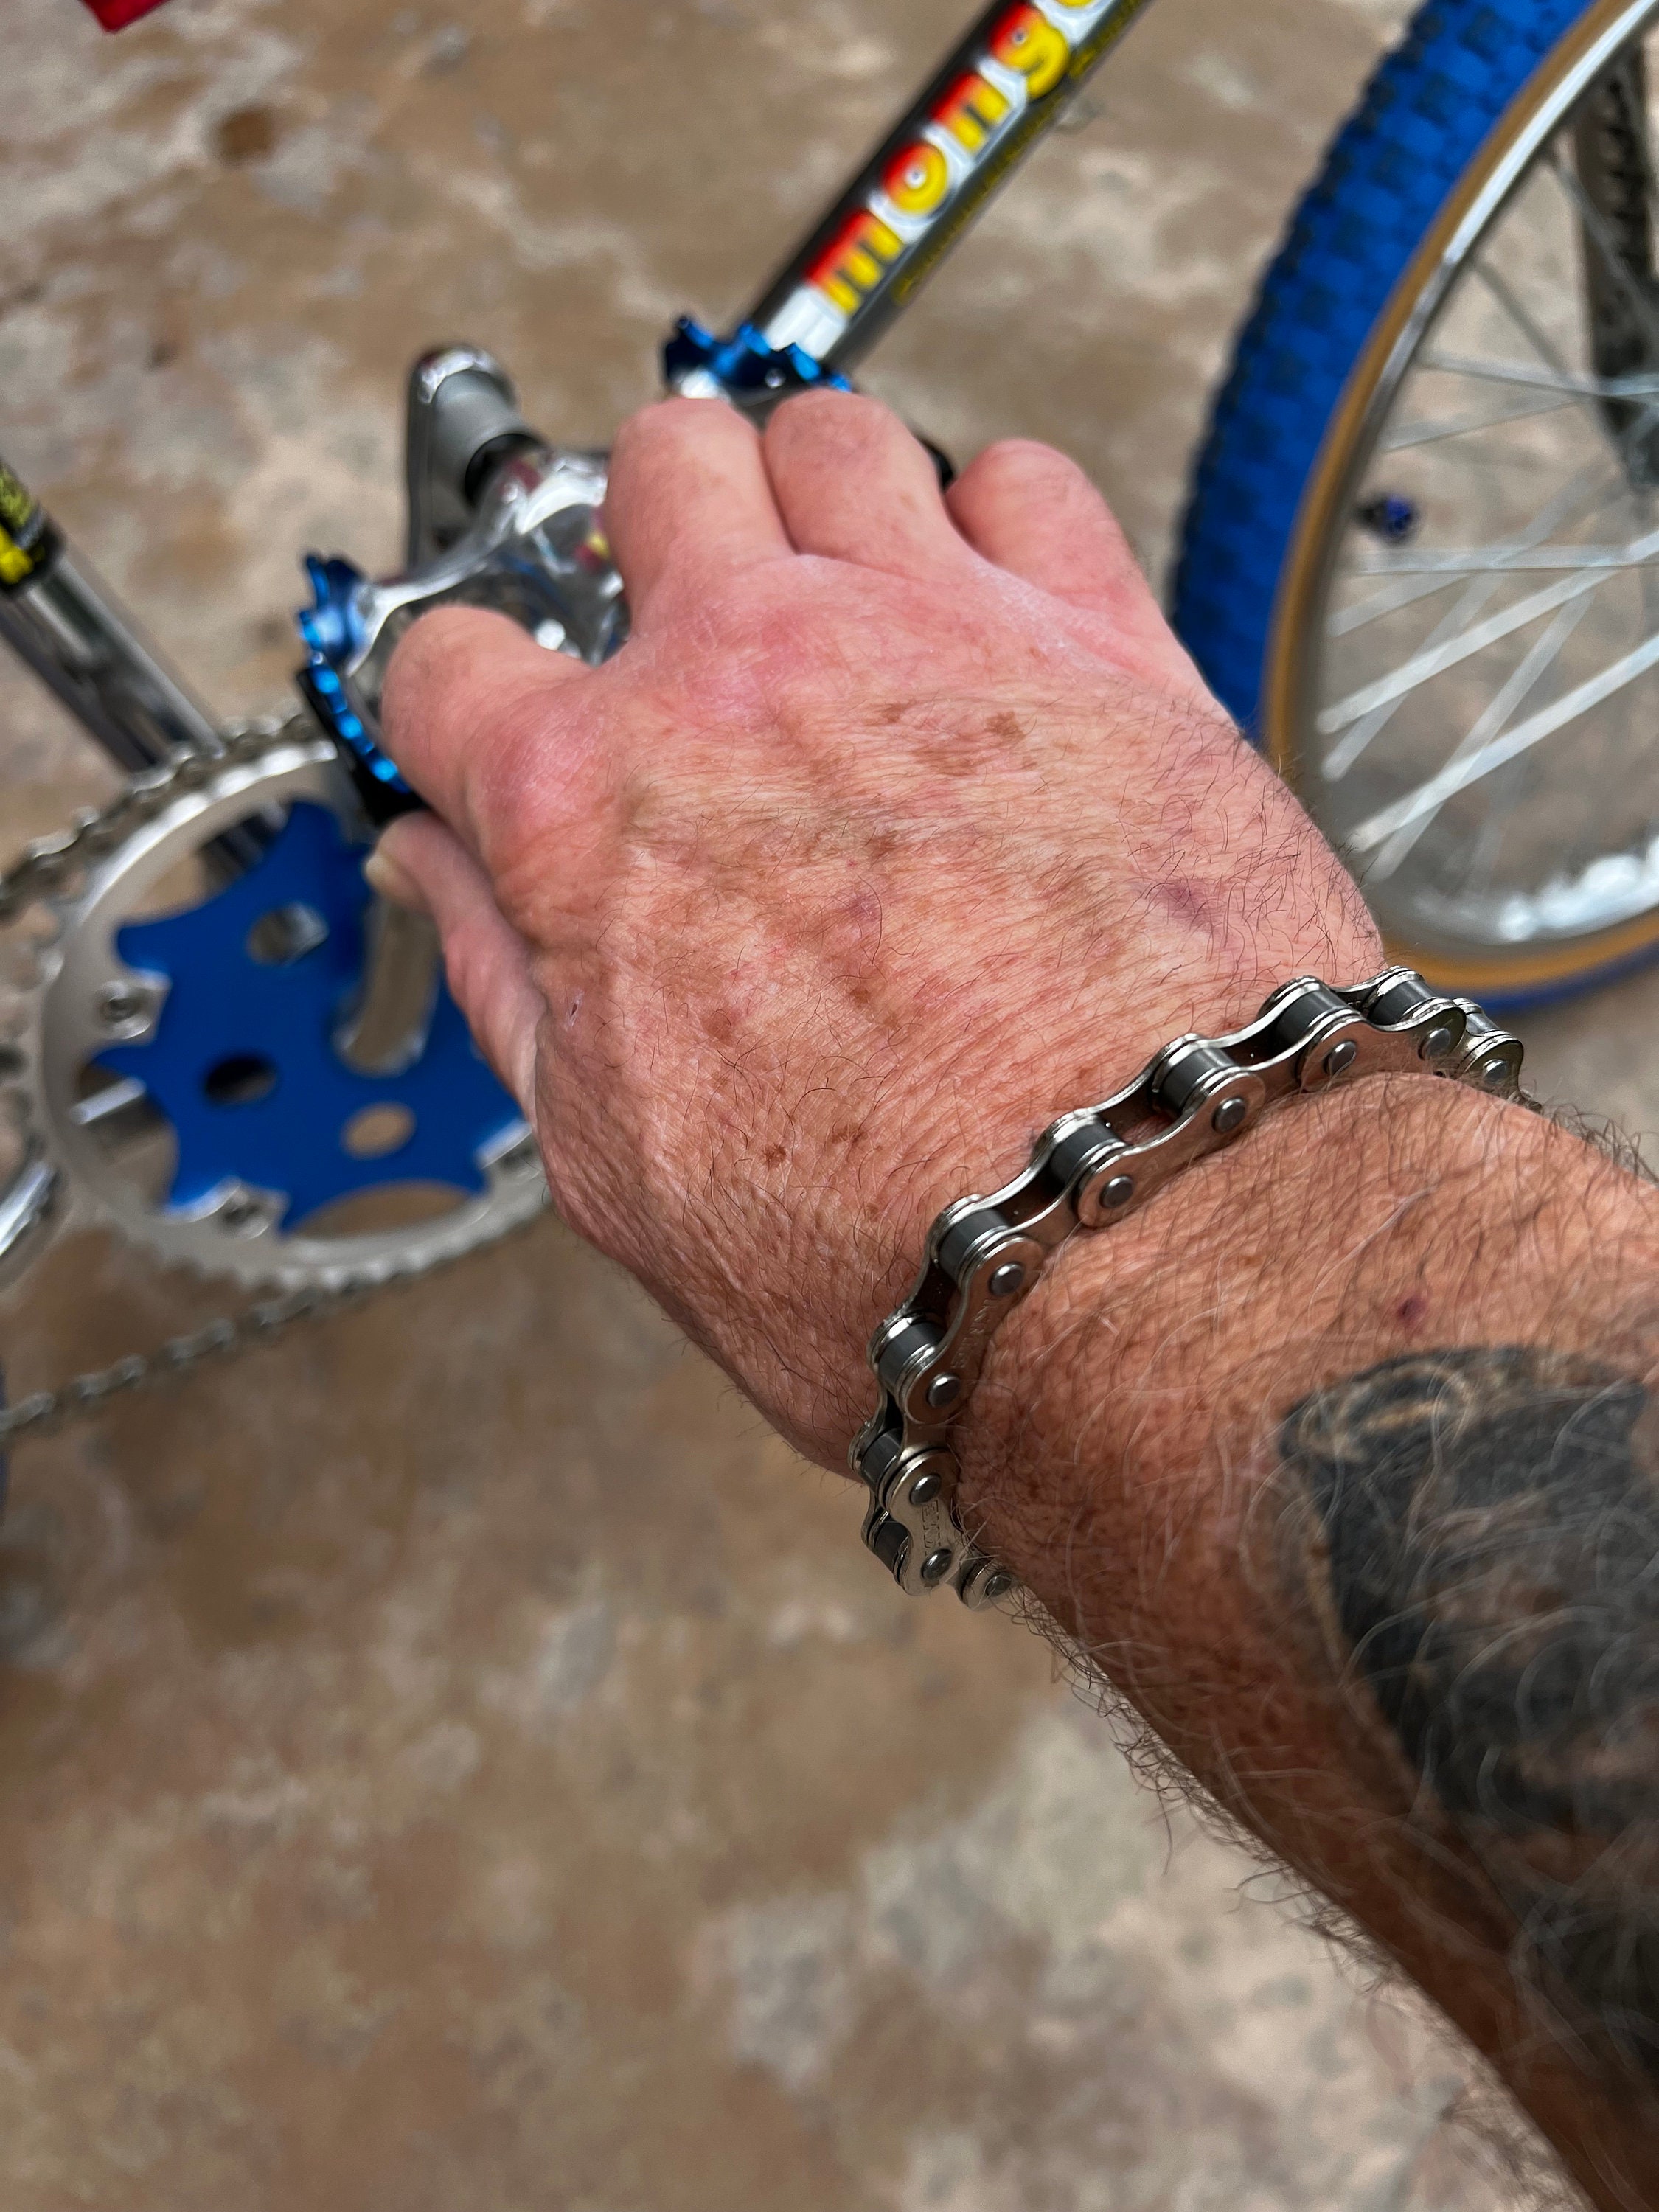 10mm Cross Bible Nameplate Bike Chain Bracelet For Men Stainless Steel  Fashion Jewelry Accessories Gifts Waterproof  Bracelets  AliExpress